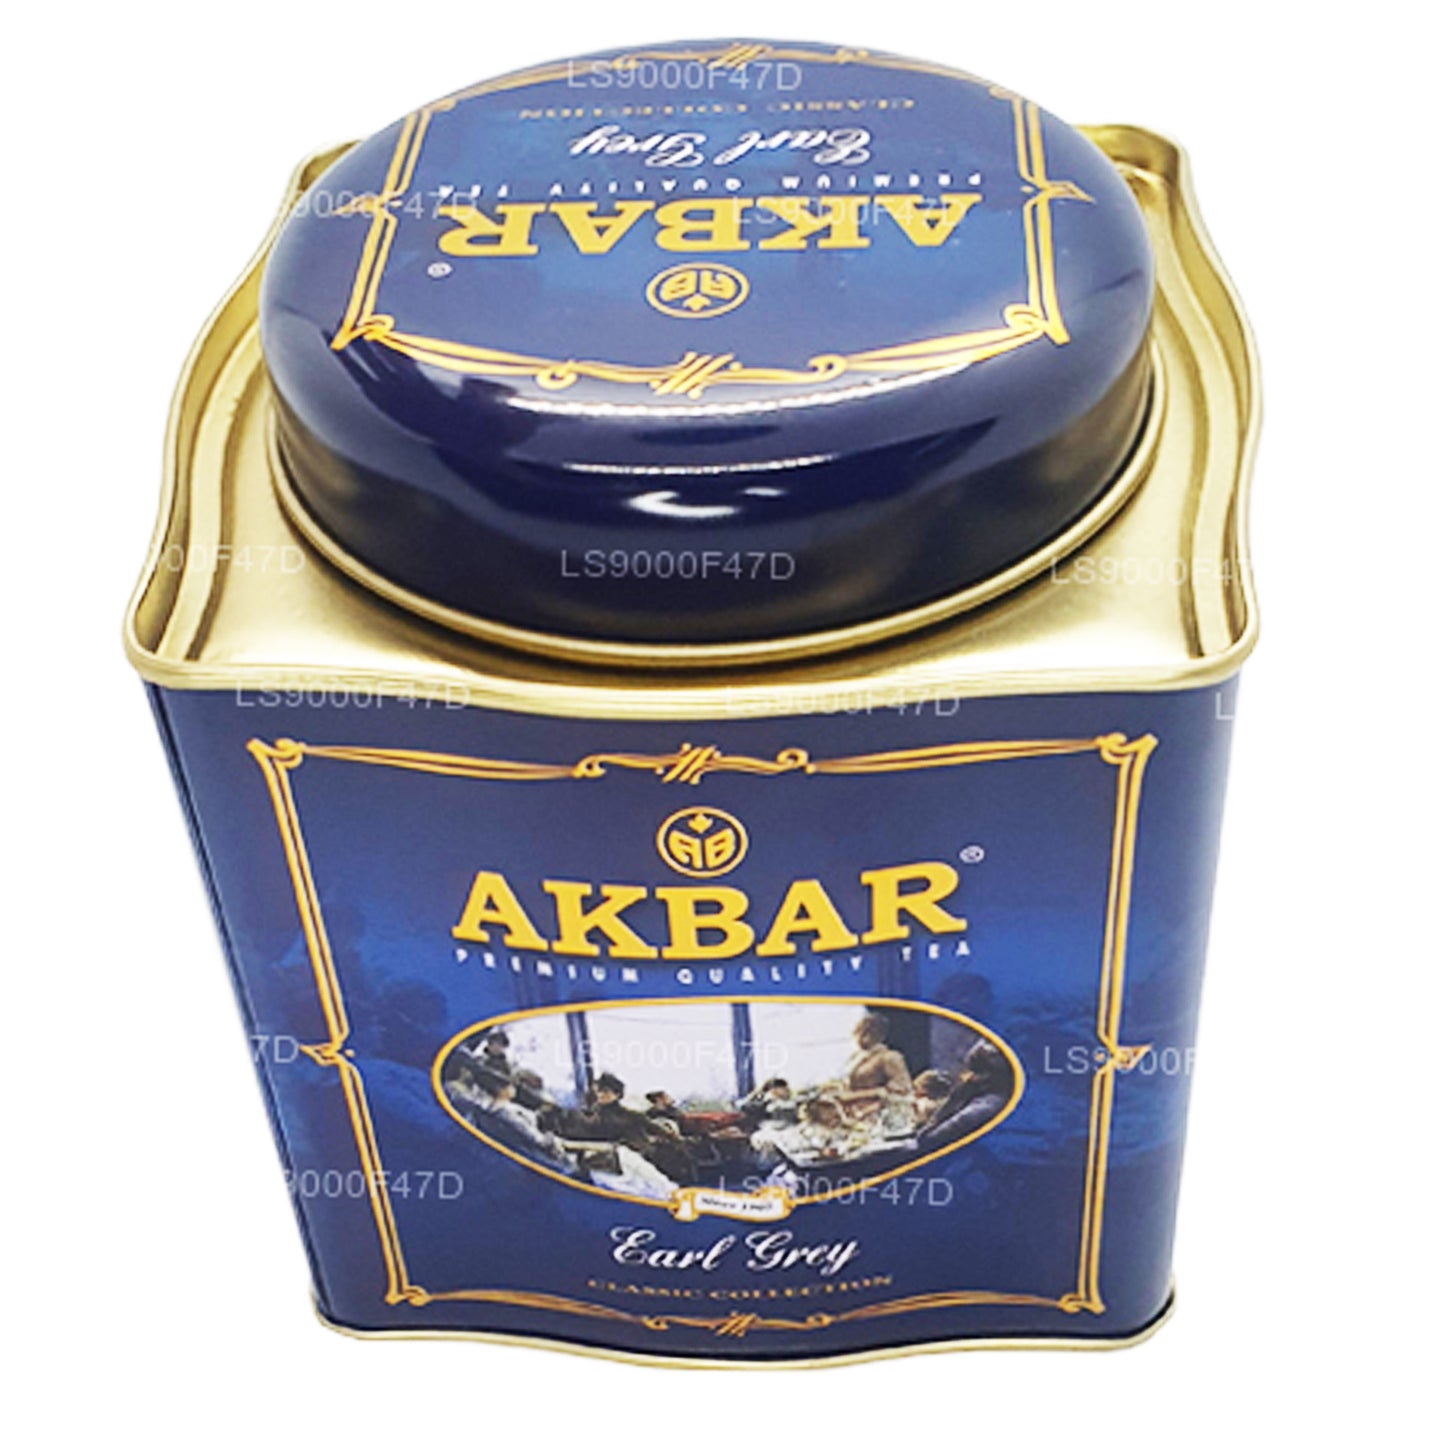 Akbar Classic Earl Grey Tea (250g) Tina